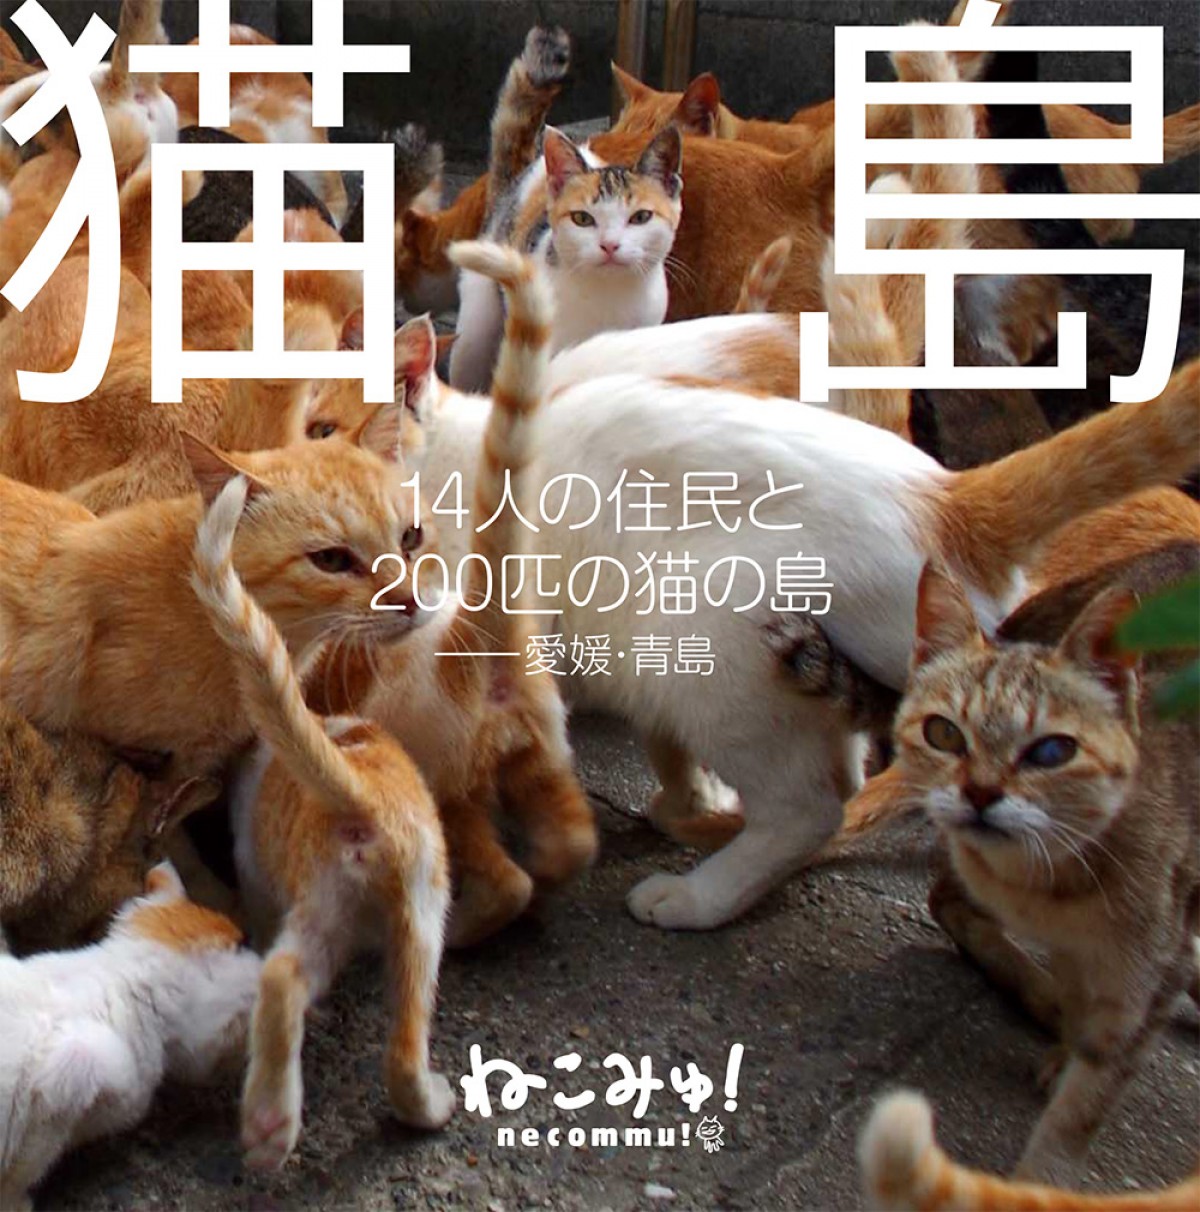 ネットで話題!! 200匹の猫の島を写した写真集『猫島』発売